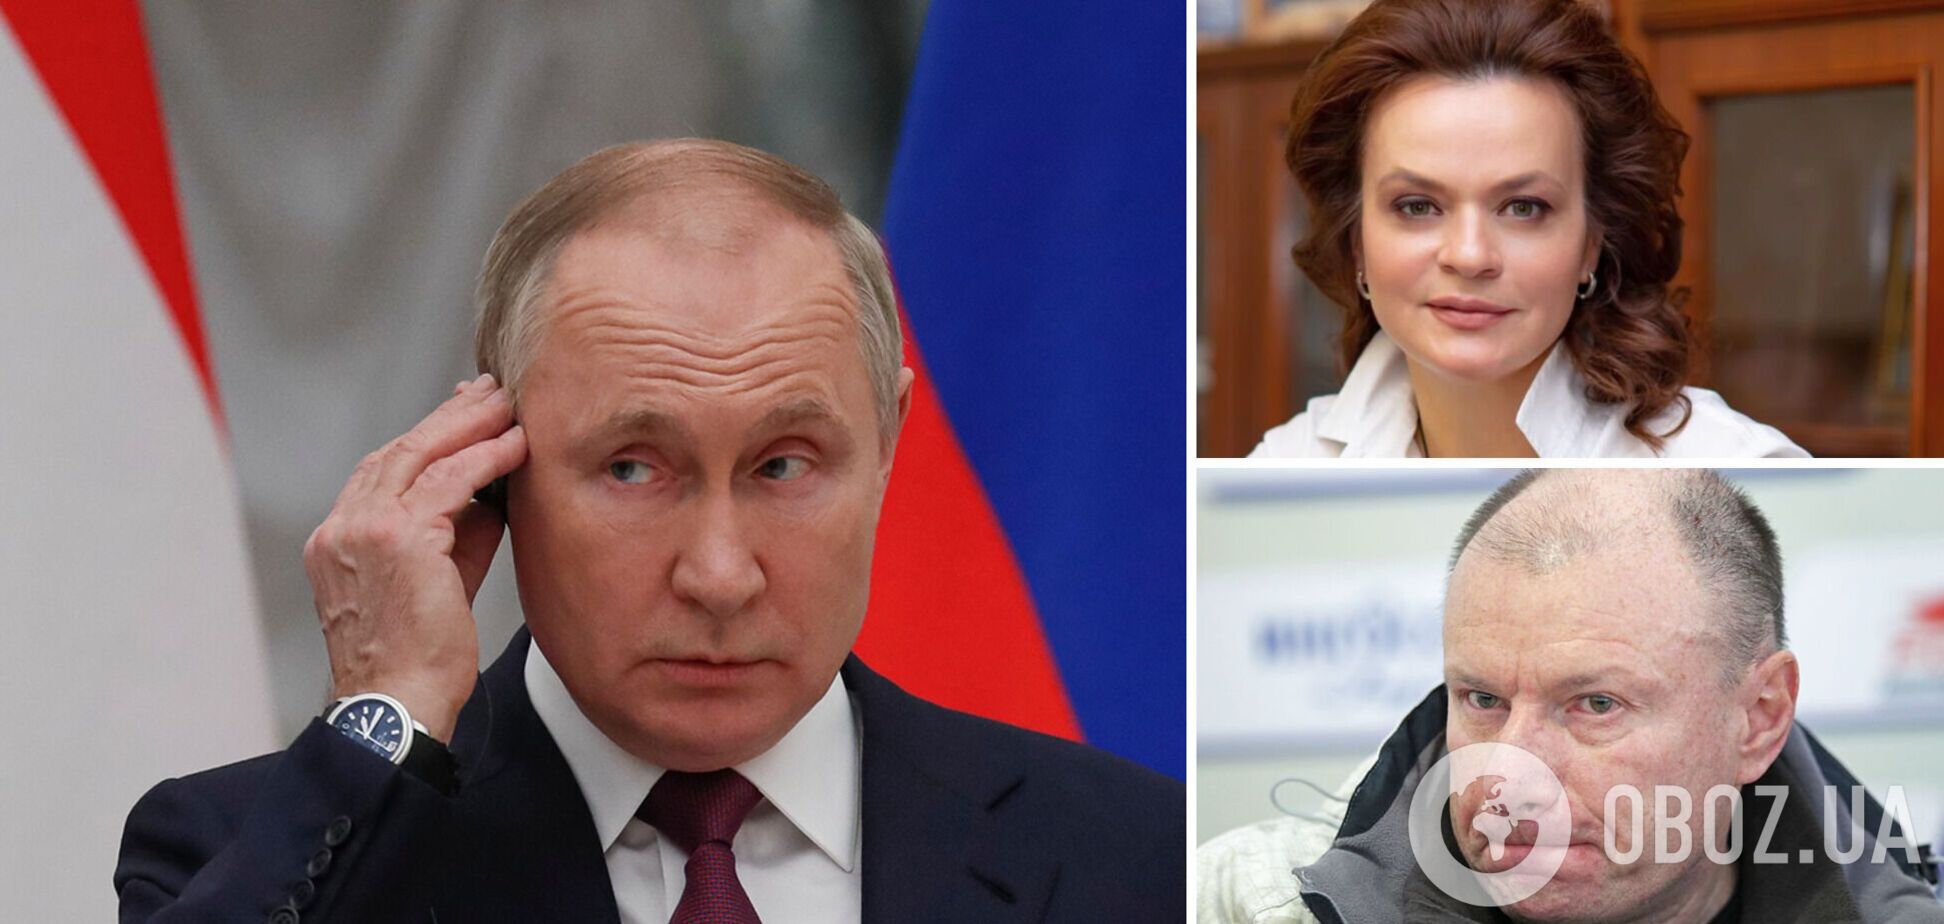 Цивільєва та Потанін потрапили під санкції через зв'язки з Путіним